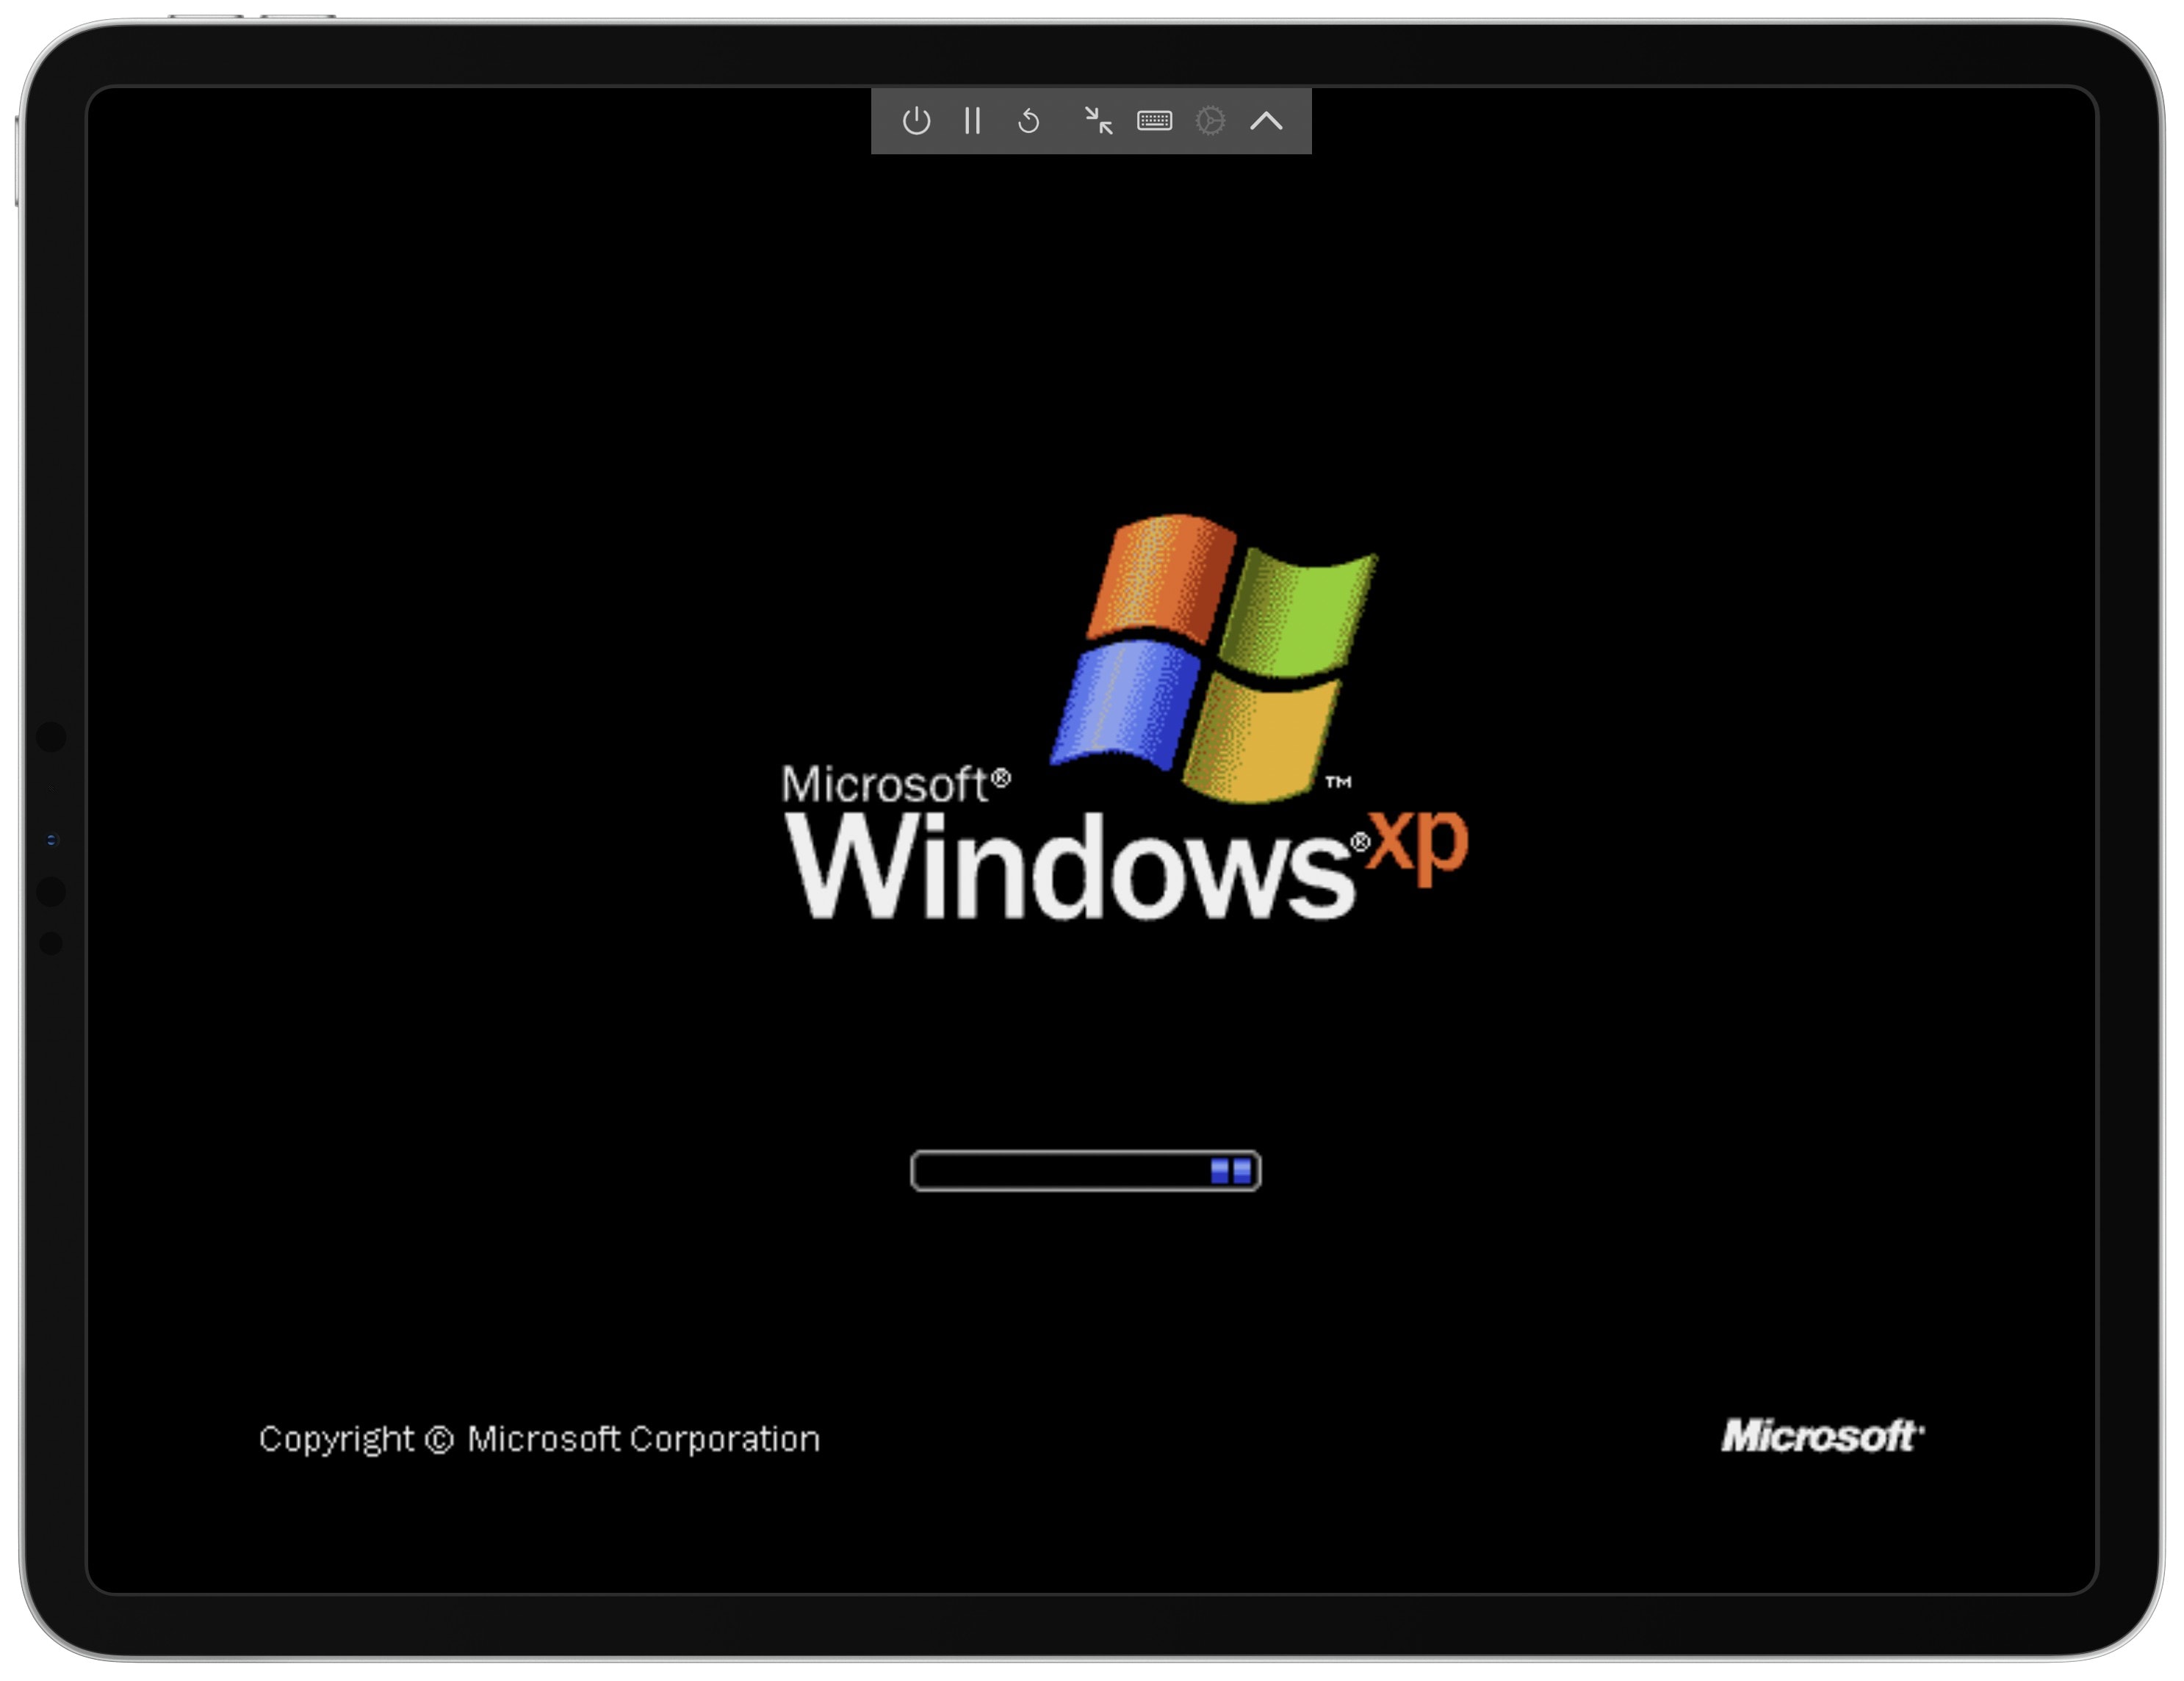 How to run Windows XP on iPhone or iPad